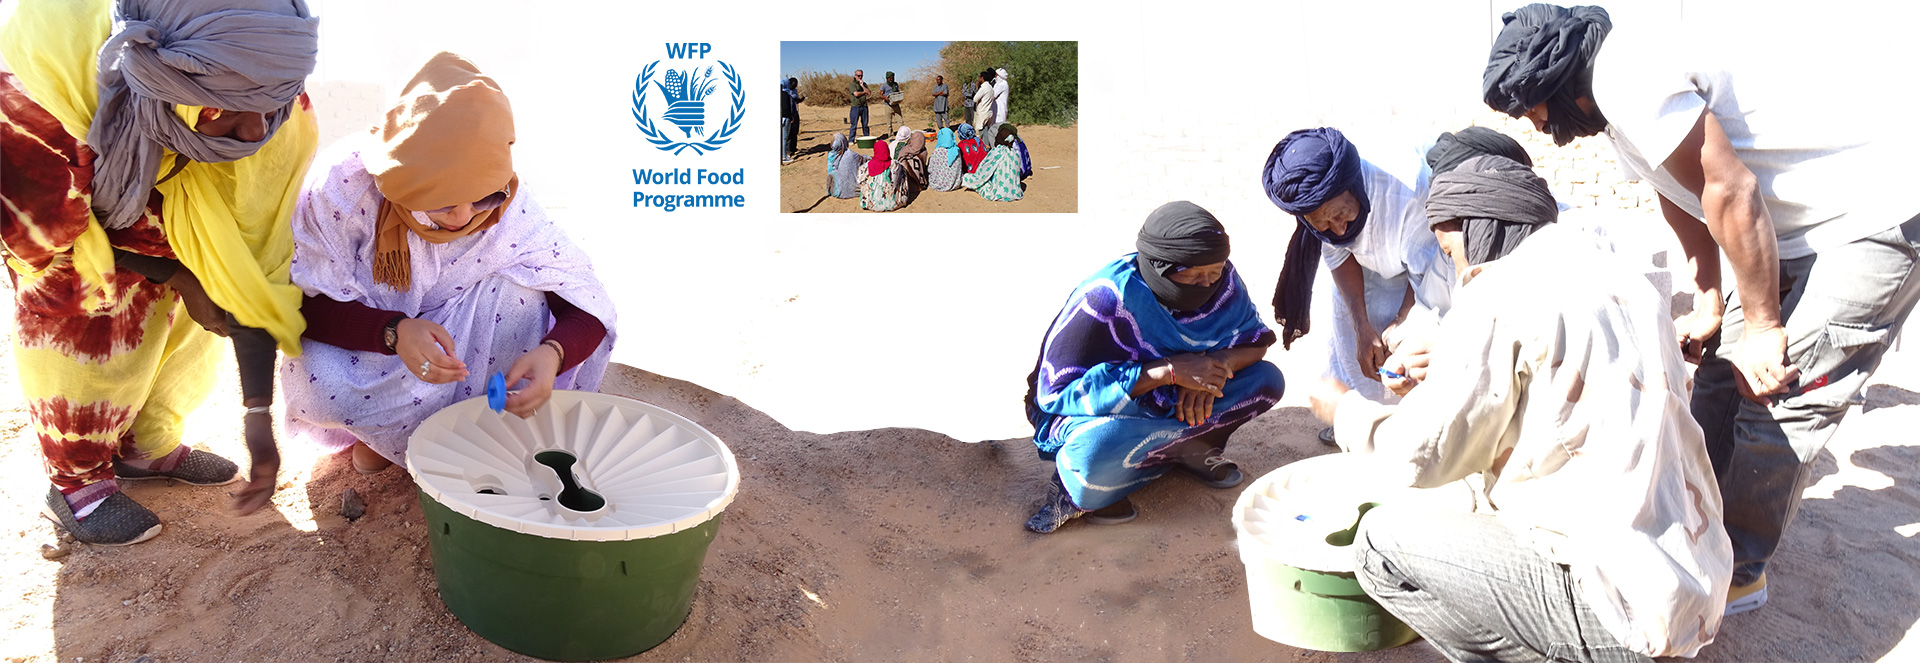 Cooperação com World Food Programme Innovation Accelerator e a Oxfam na Argélia